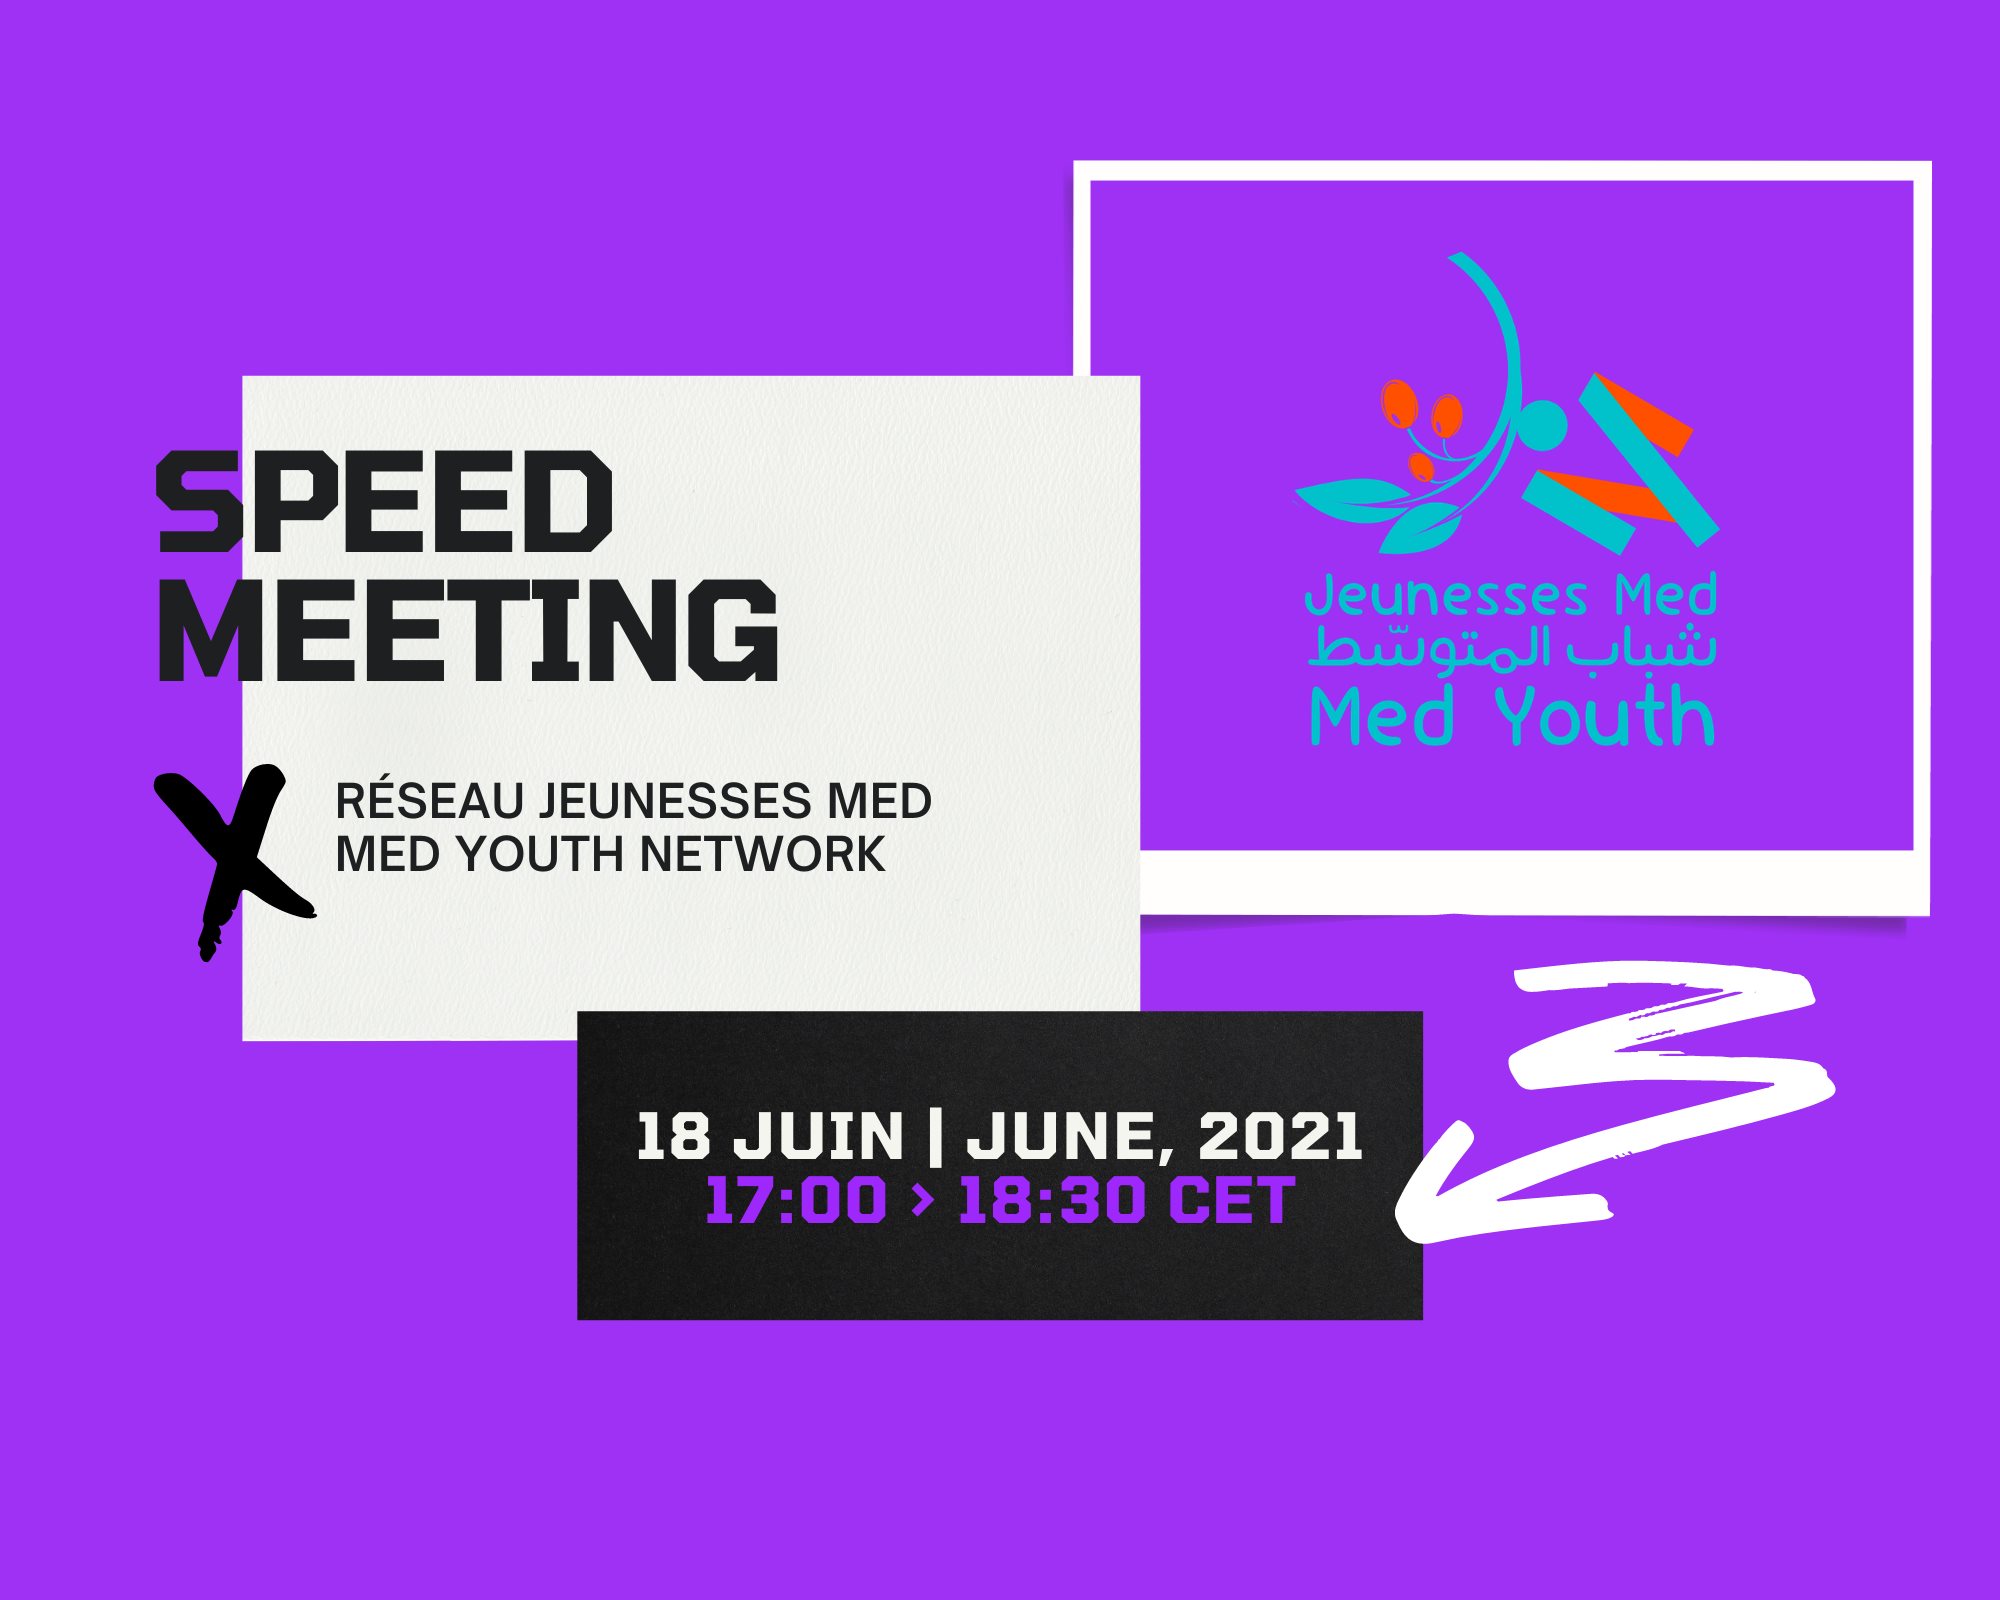 Speed-meeting en ligne proposé par le réseau Jeunesses Med